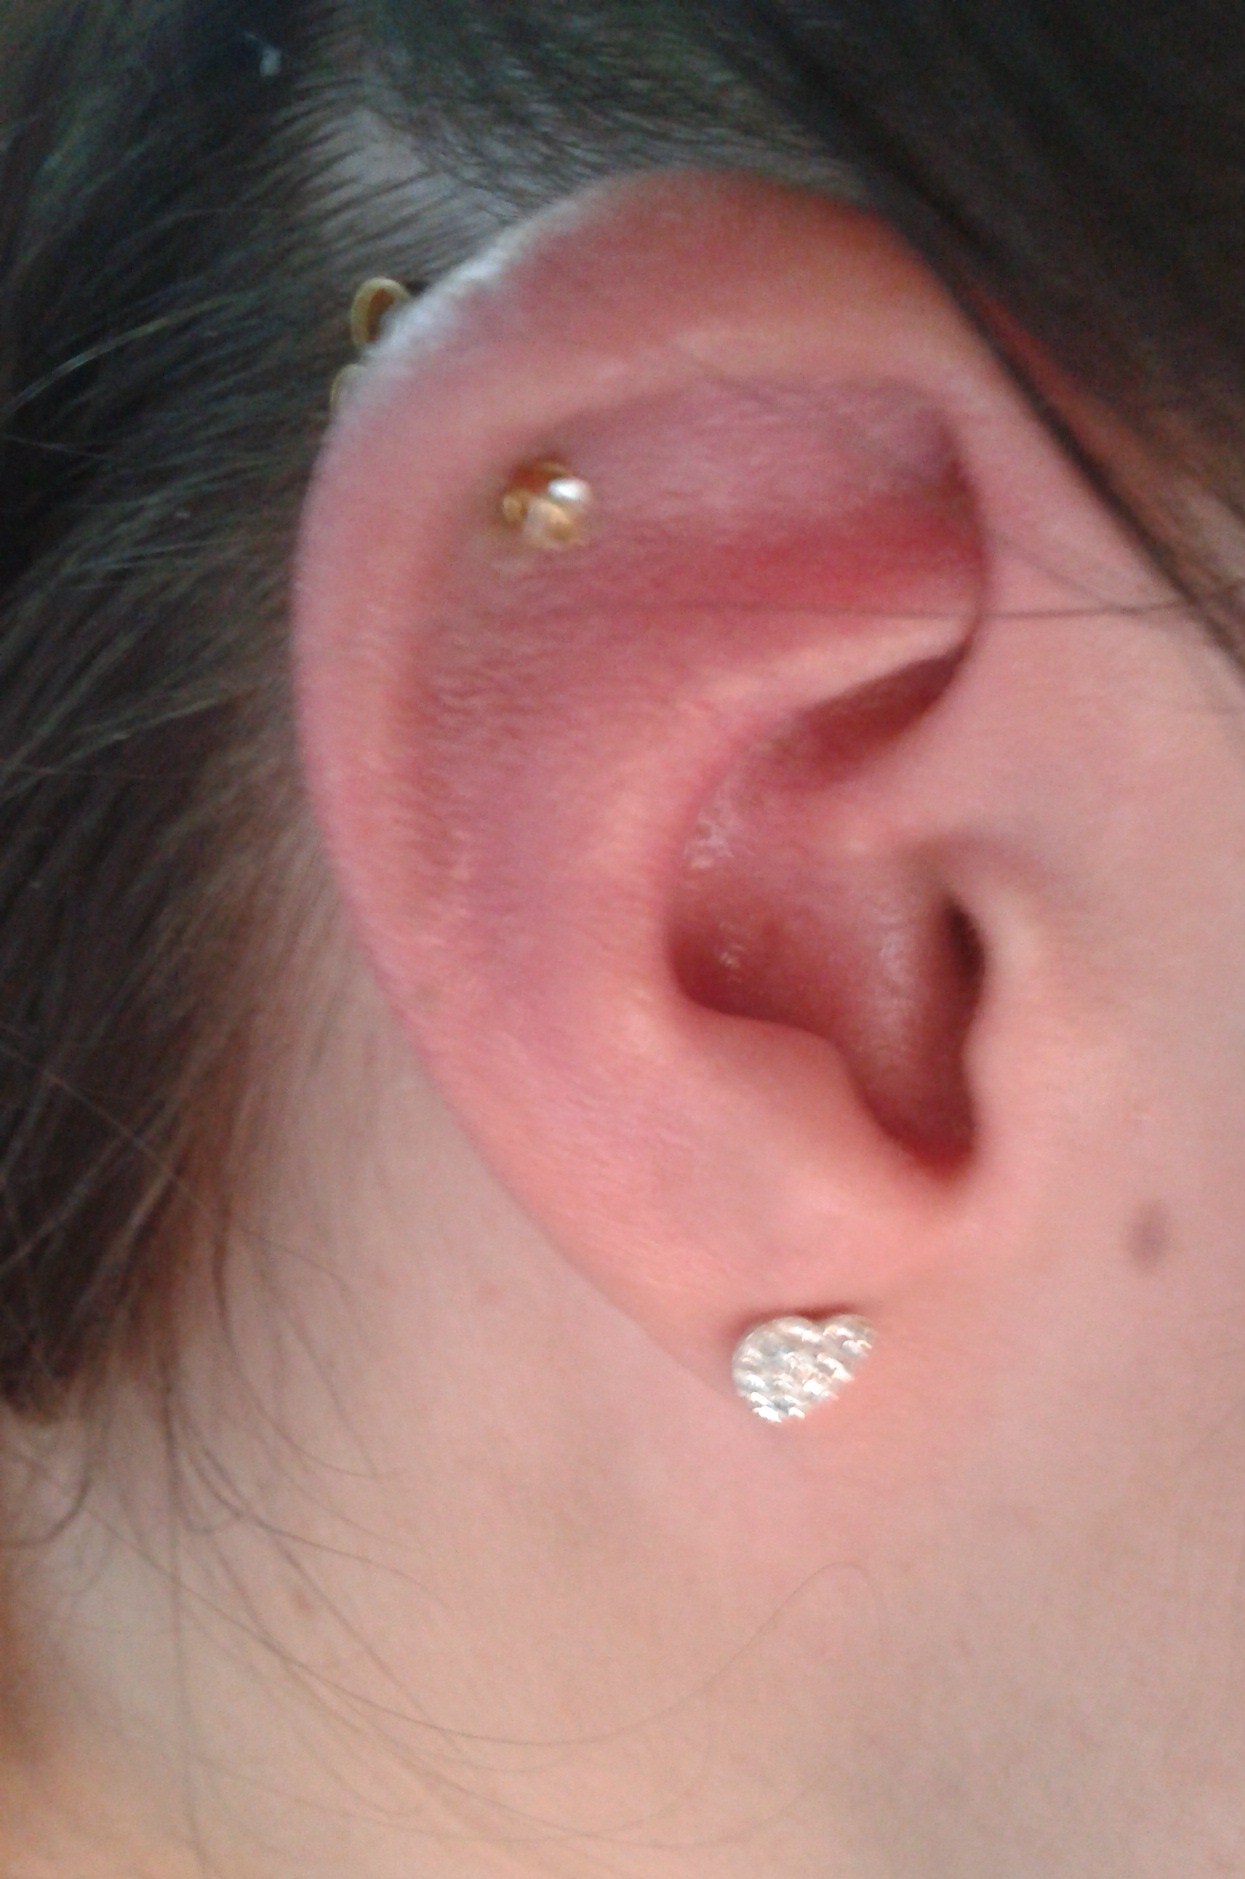 swollen ear cartilage